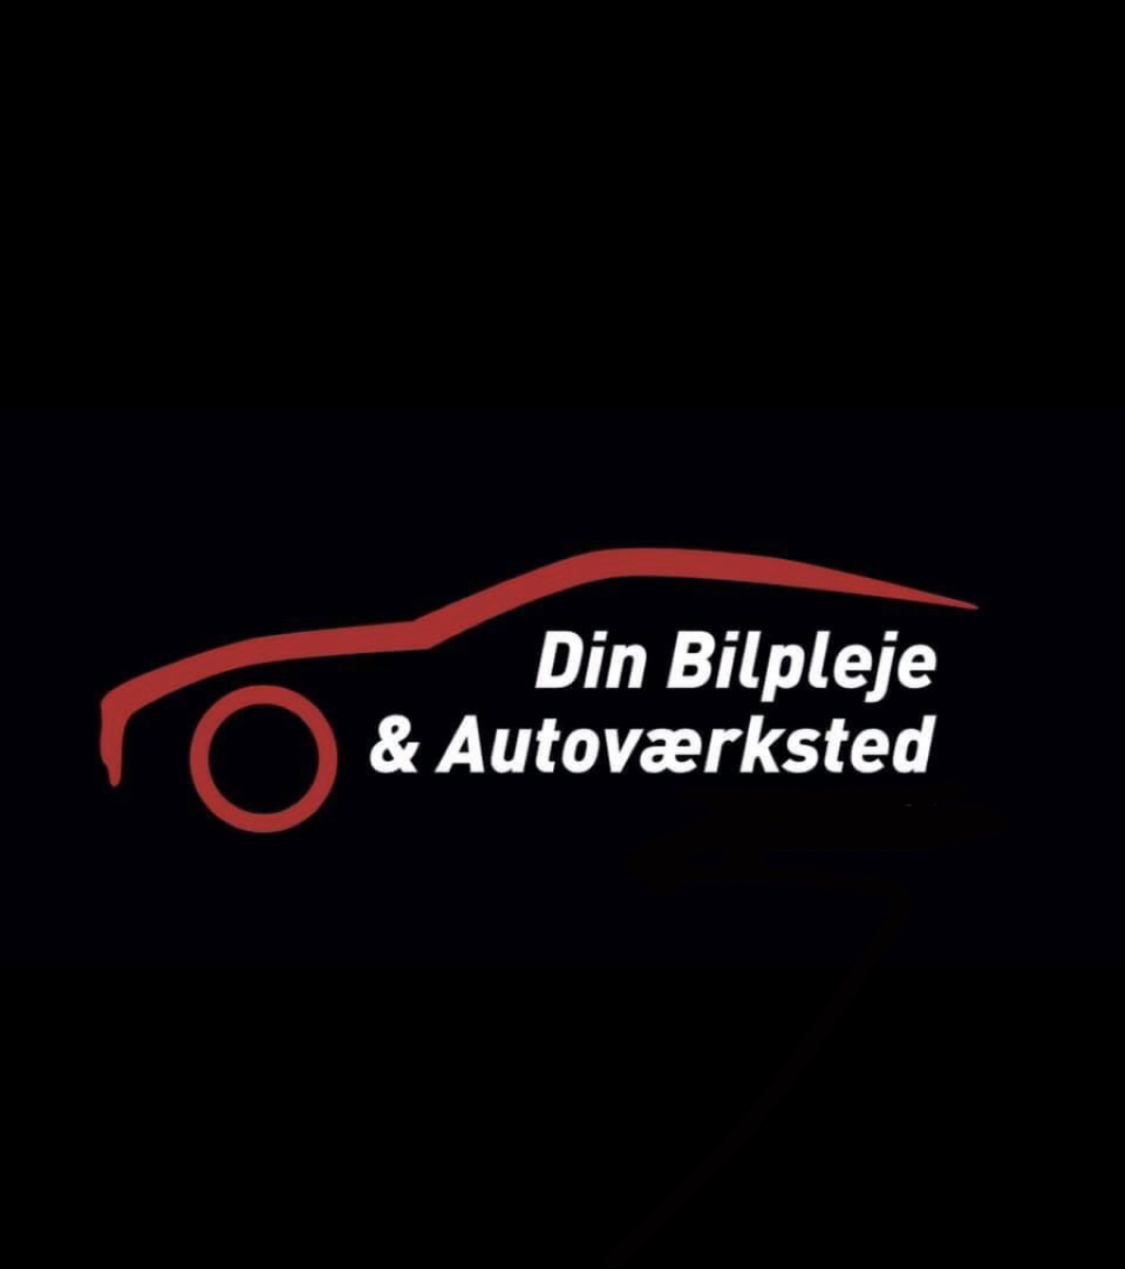 Din Bilpleje & autoværksted logo